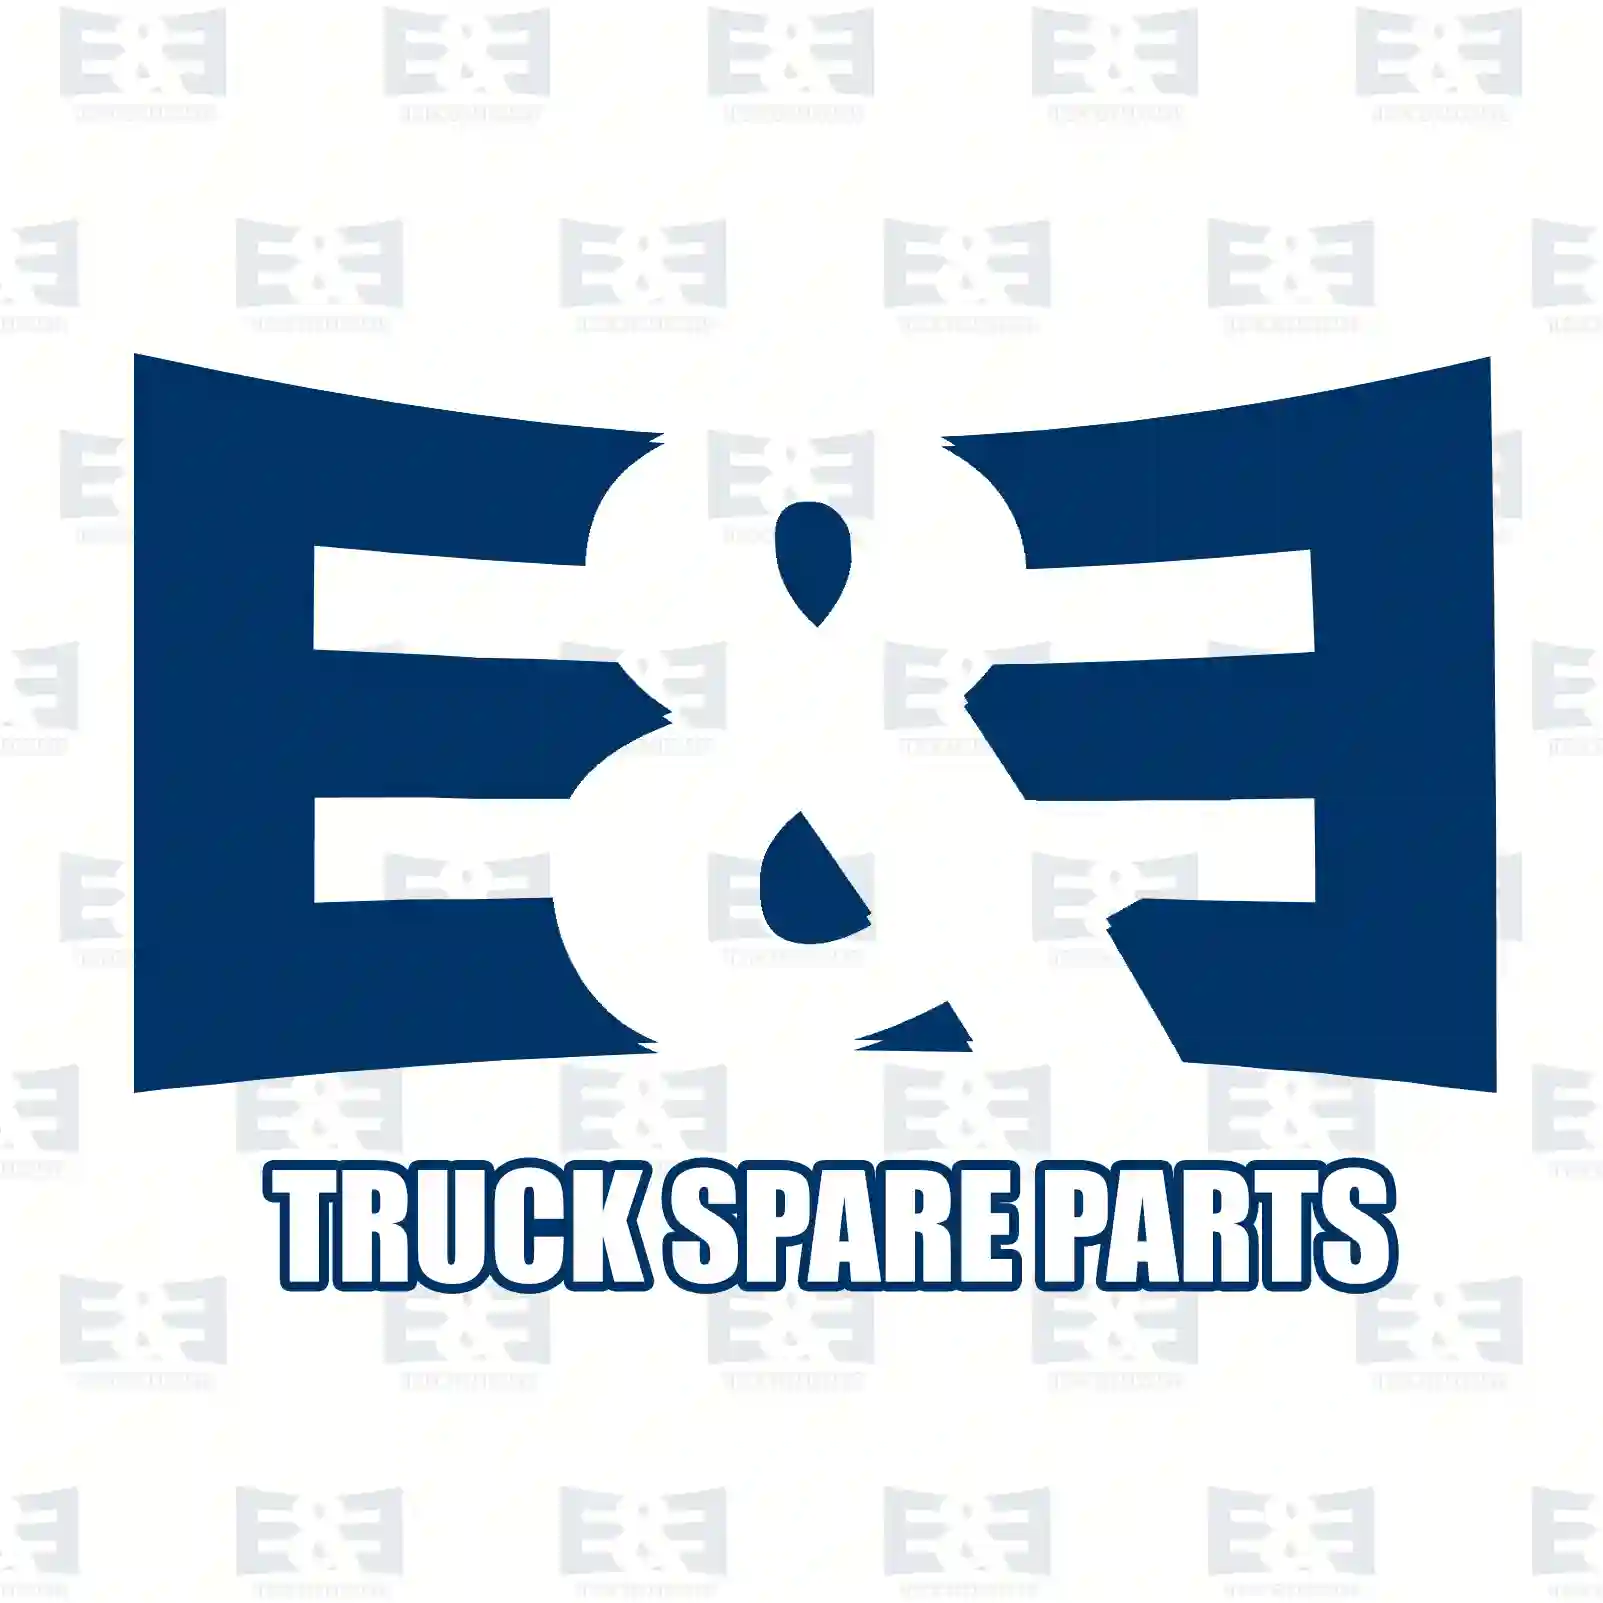 Roller bearing, 2E2270235, 1523243, 81241405, ZG02948-0008 ||  2E2270235 E&E Truck Spare Parts | Truck Spare Parts, Auotomotive Spare Parts Roller bearing, 2E2270235, 1523243, 81241405, ZG02948-0008 ||  2E2270235 E&E Truck Spare Parts | Truck Spare Parts, Auotomotive Spare Parts